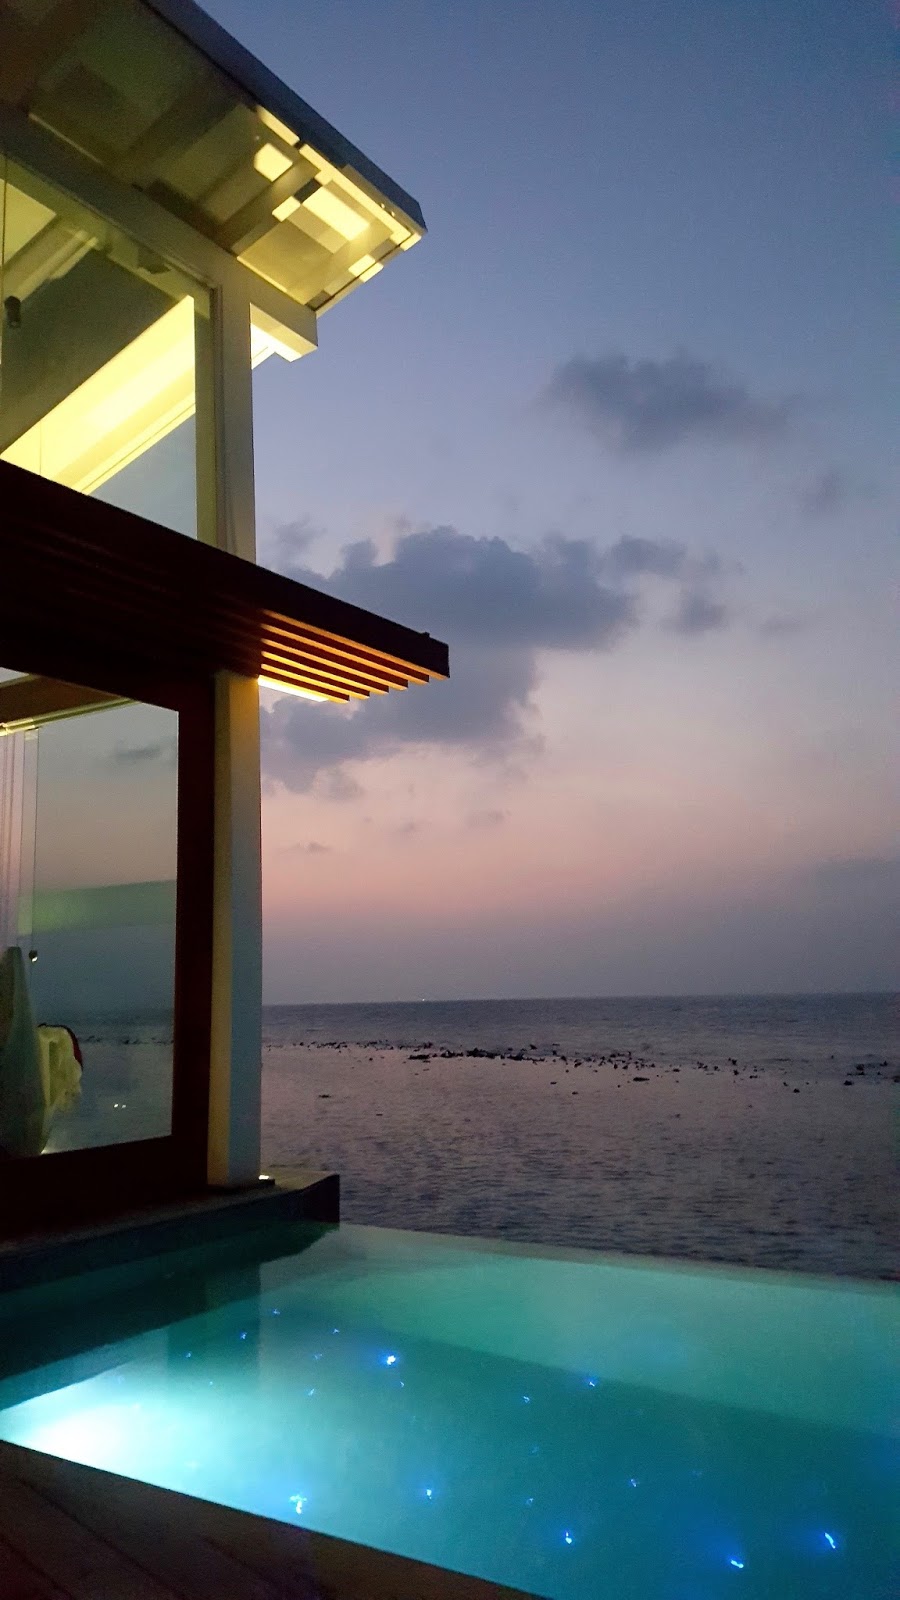 maldives holiday photo diary peexo travel blogger